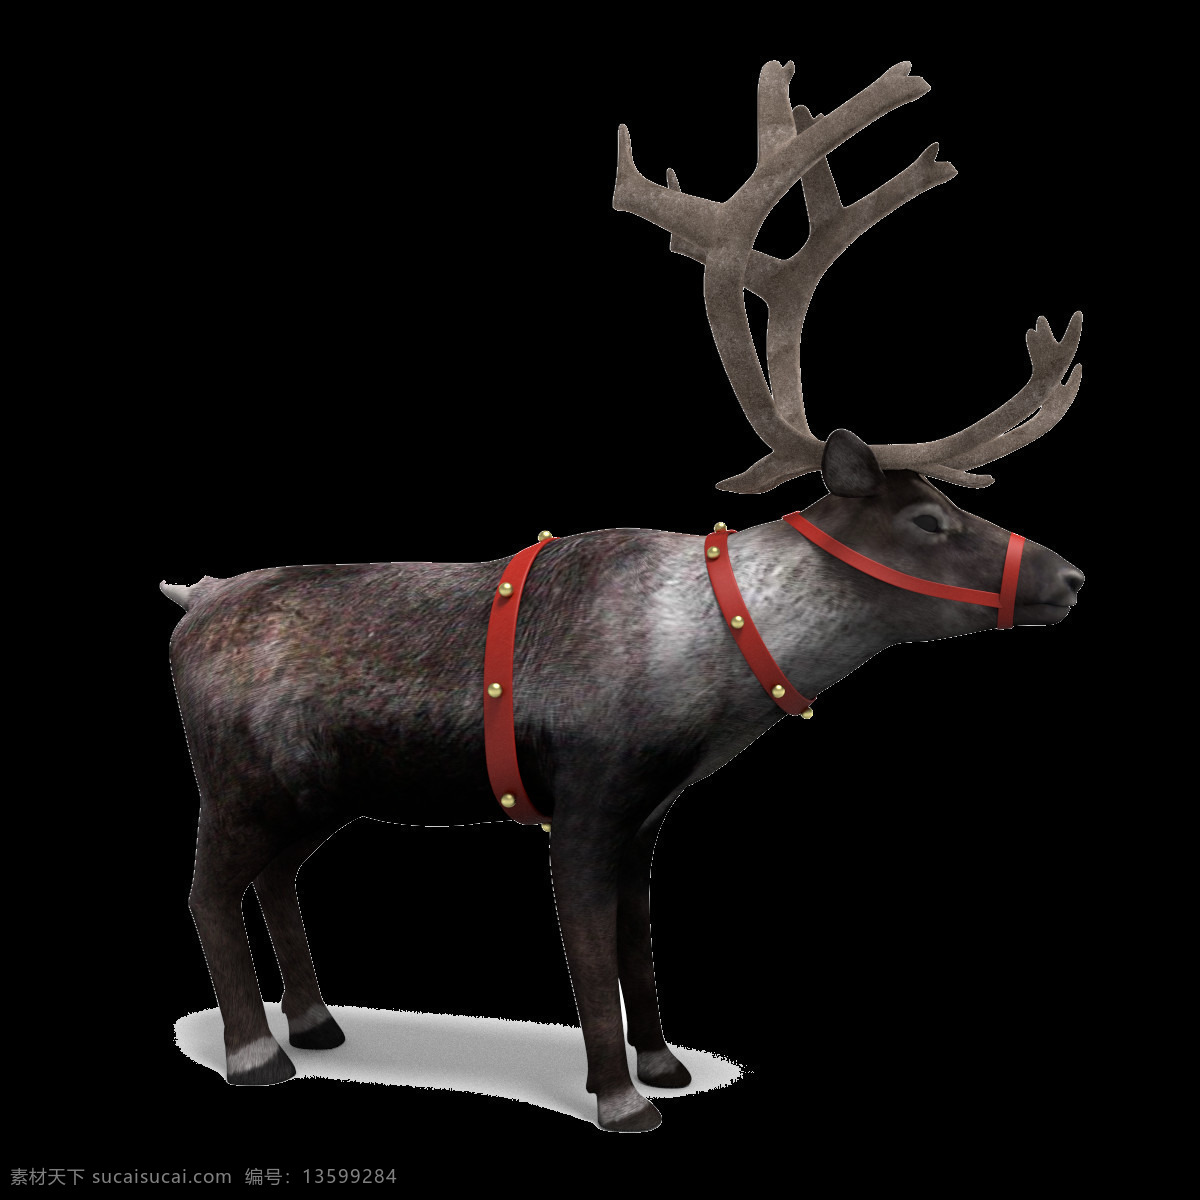 深褐色 鹿 侧面图 免 抠 透明 鹿侧面图 鹿侧面图片 广告 侧面 圣诞鹿 驯鹿图片 圣诞驯鹿图片